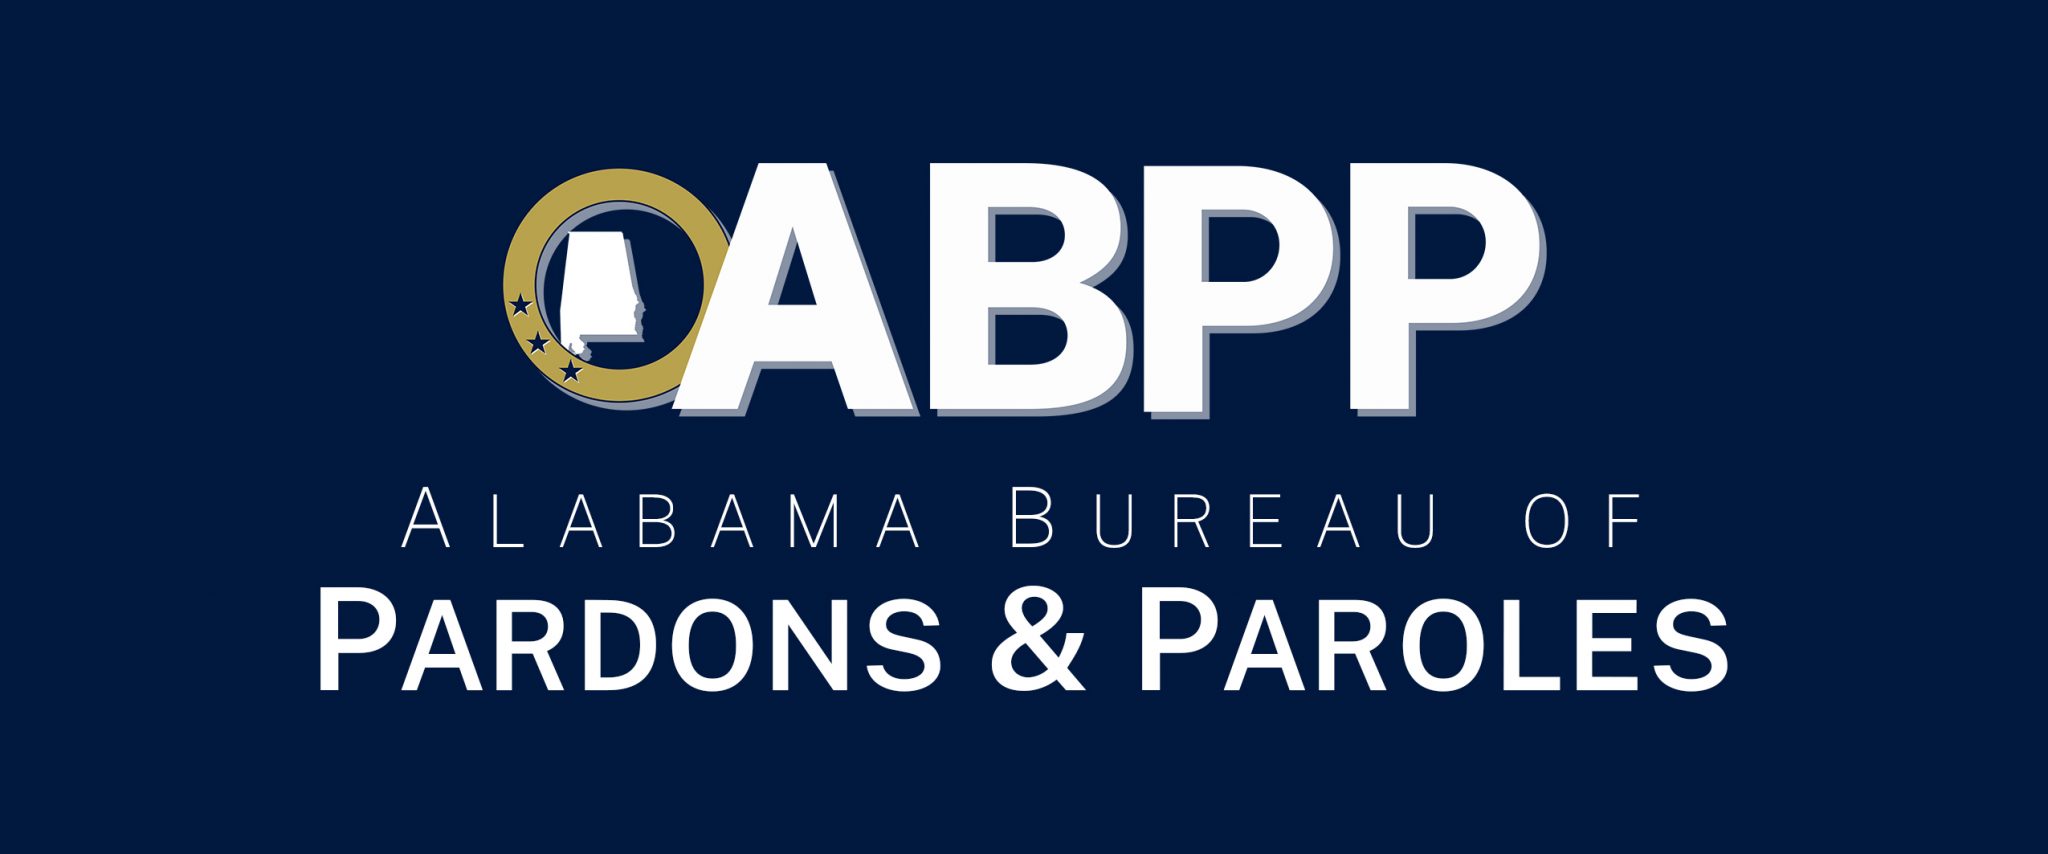 Home The Alabama Bureau of Pardons and Paroles Government Agency